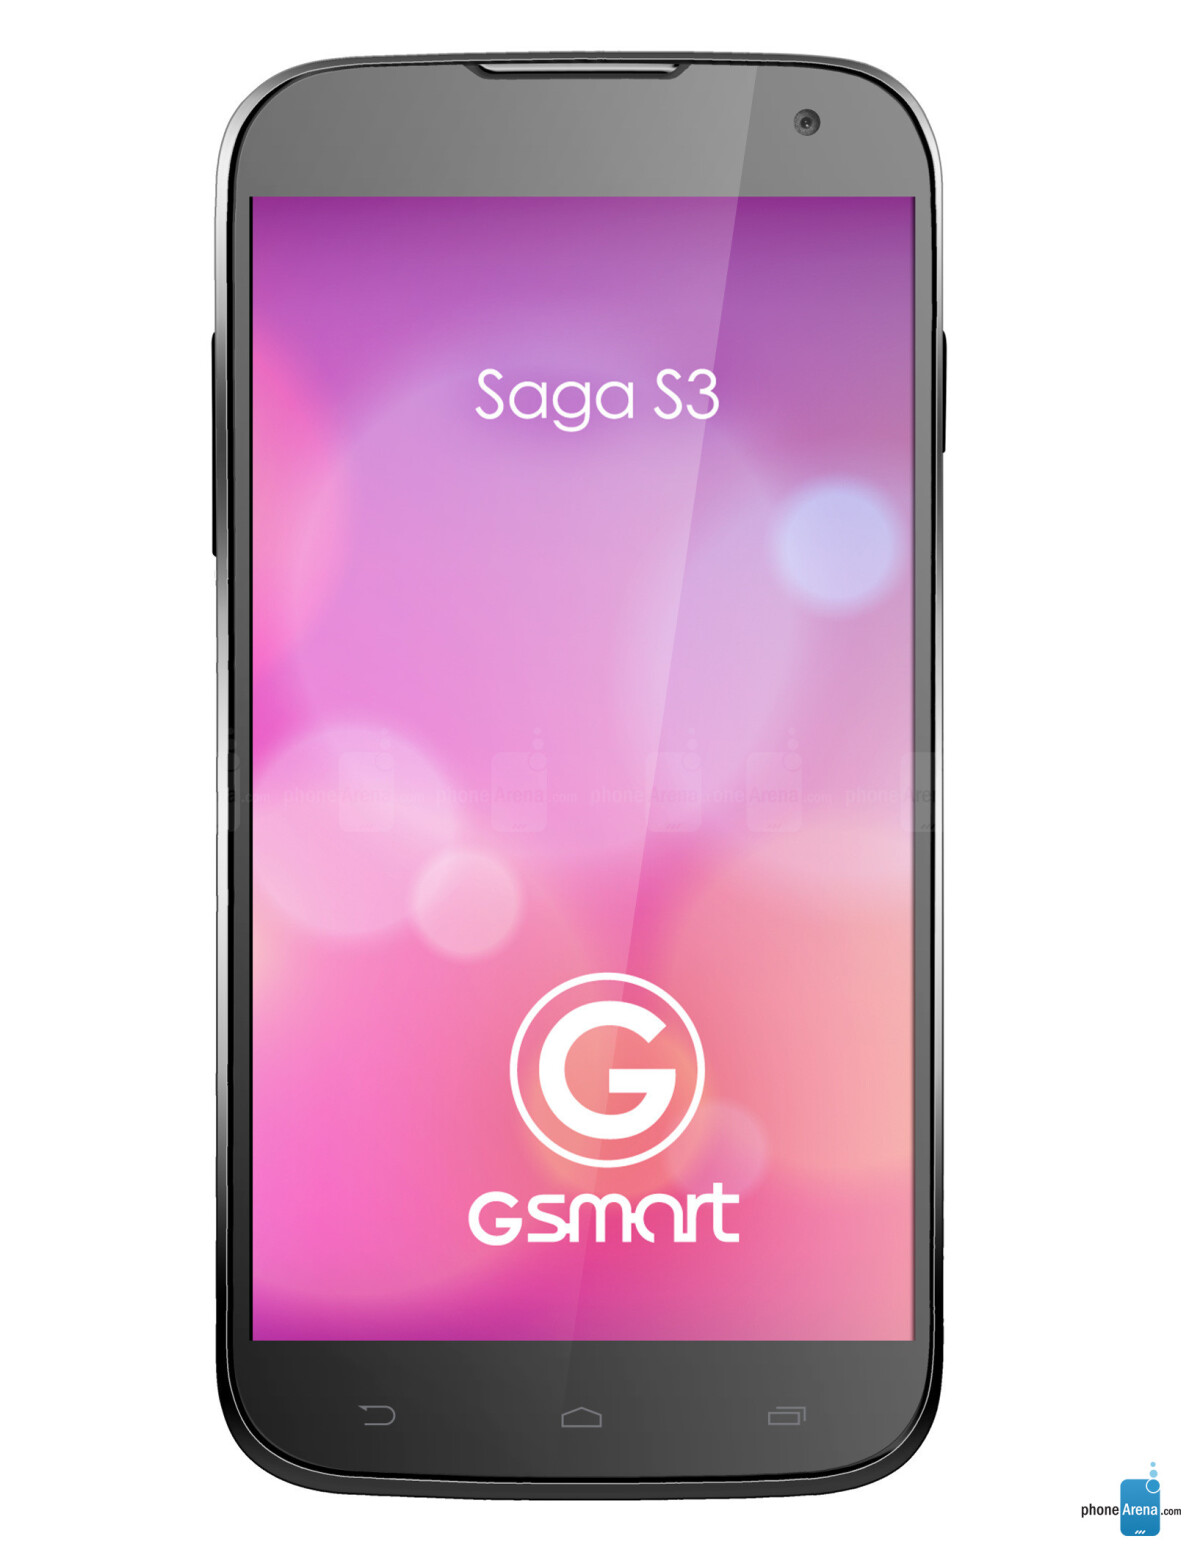 GIGABYTE GSmart Saga S3